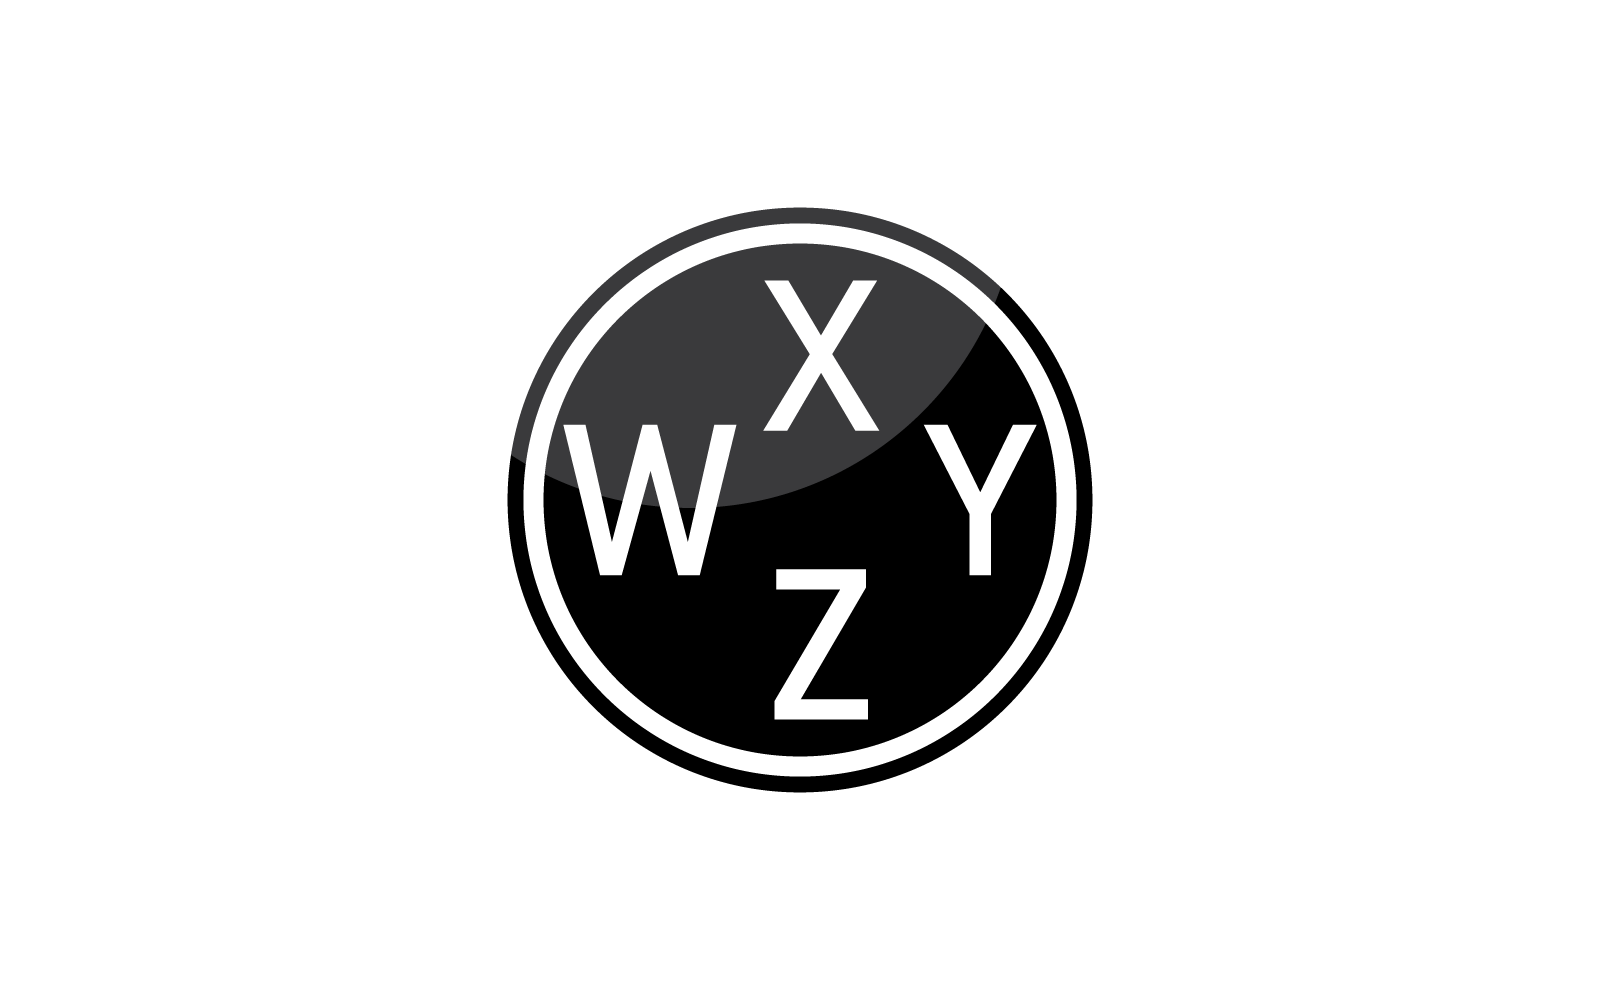 Modern WXYZ Initial letter alphabet font logo vector design